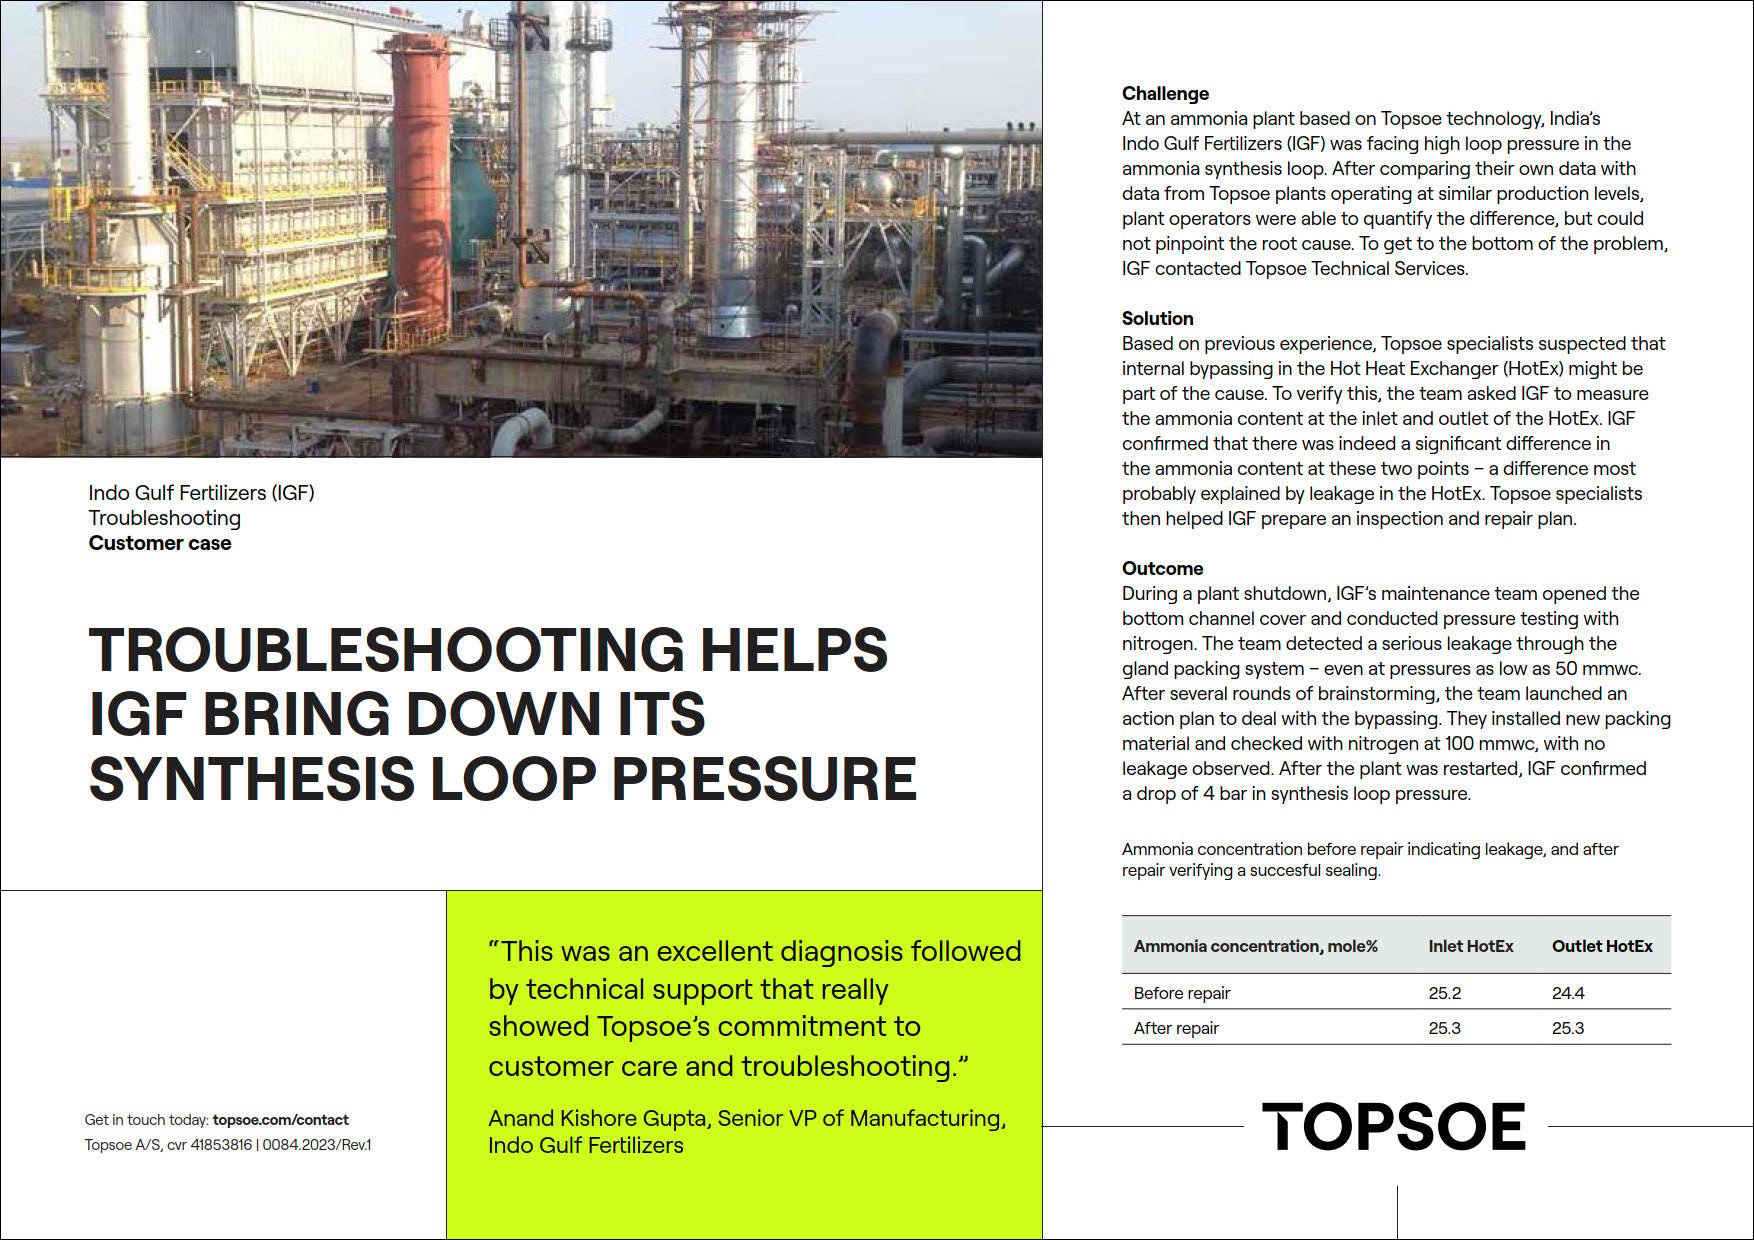 Troubleshooting helps IGF bring down its synthesis loop pressure